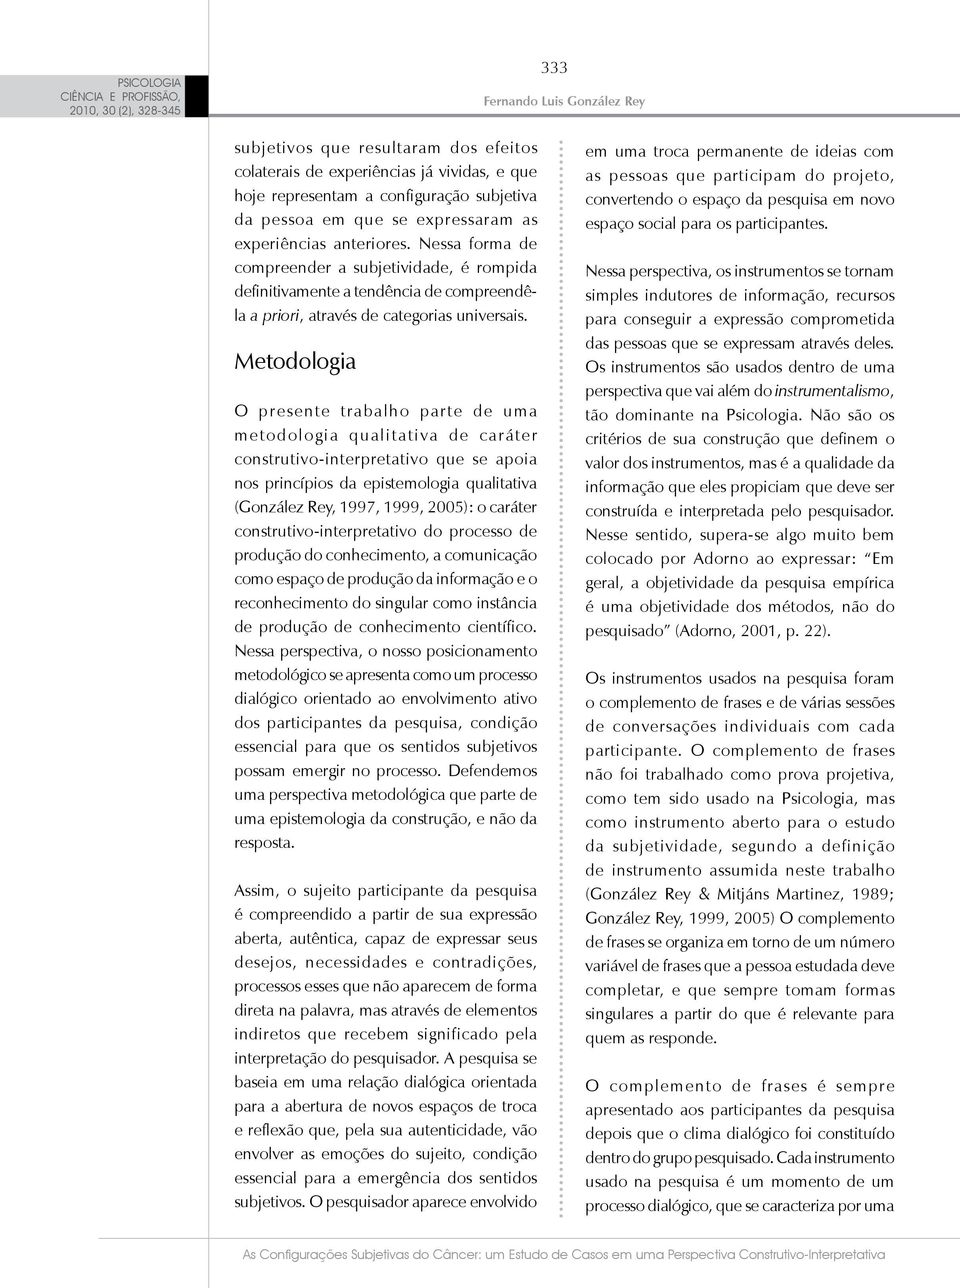 Metodologia O presente trabalho parte de uma metodologia qualitativa de caráter construtivo-interpretativo que se apoia nos princípios da epistemologia qualitativa (González Rey, 1997, 1999, 2005): o